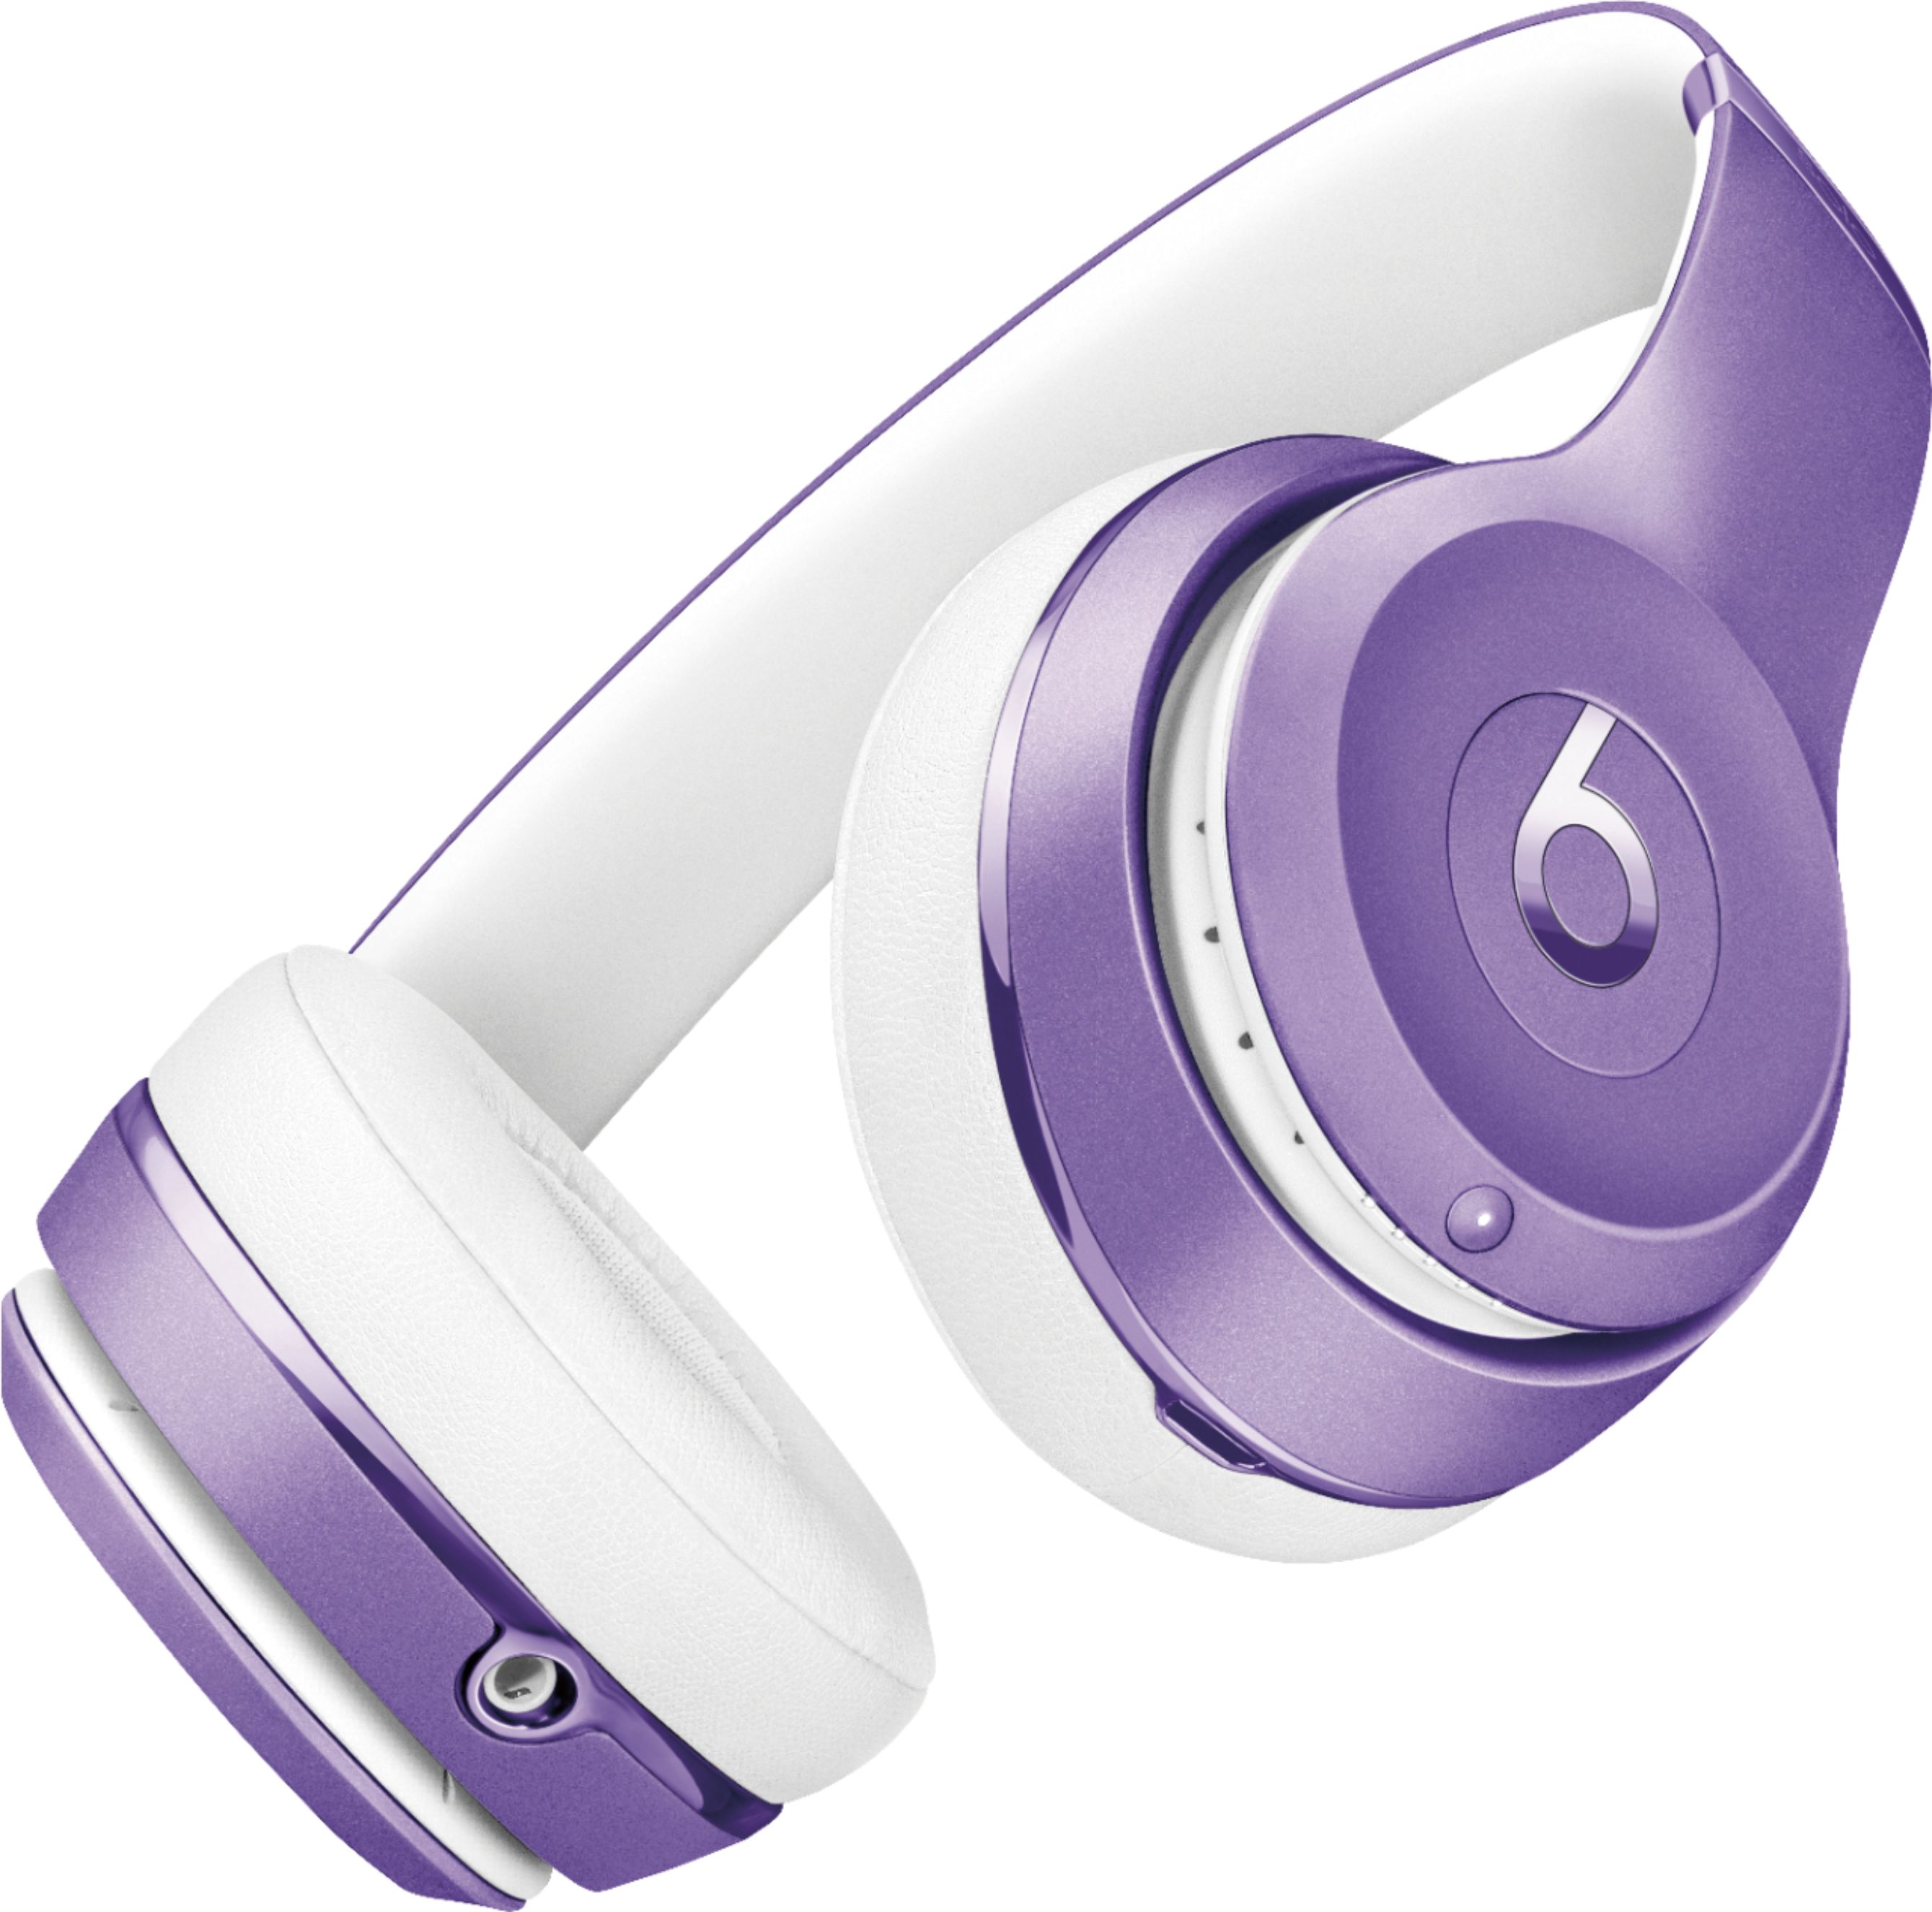 Medfølelse Ynkelig gambling Best Buy: Beats by Dr. Dre Beats Solo³ Wireless Headphones Ultra Violet  Collection Ultra Violet Collection MP132LL/A